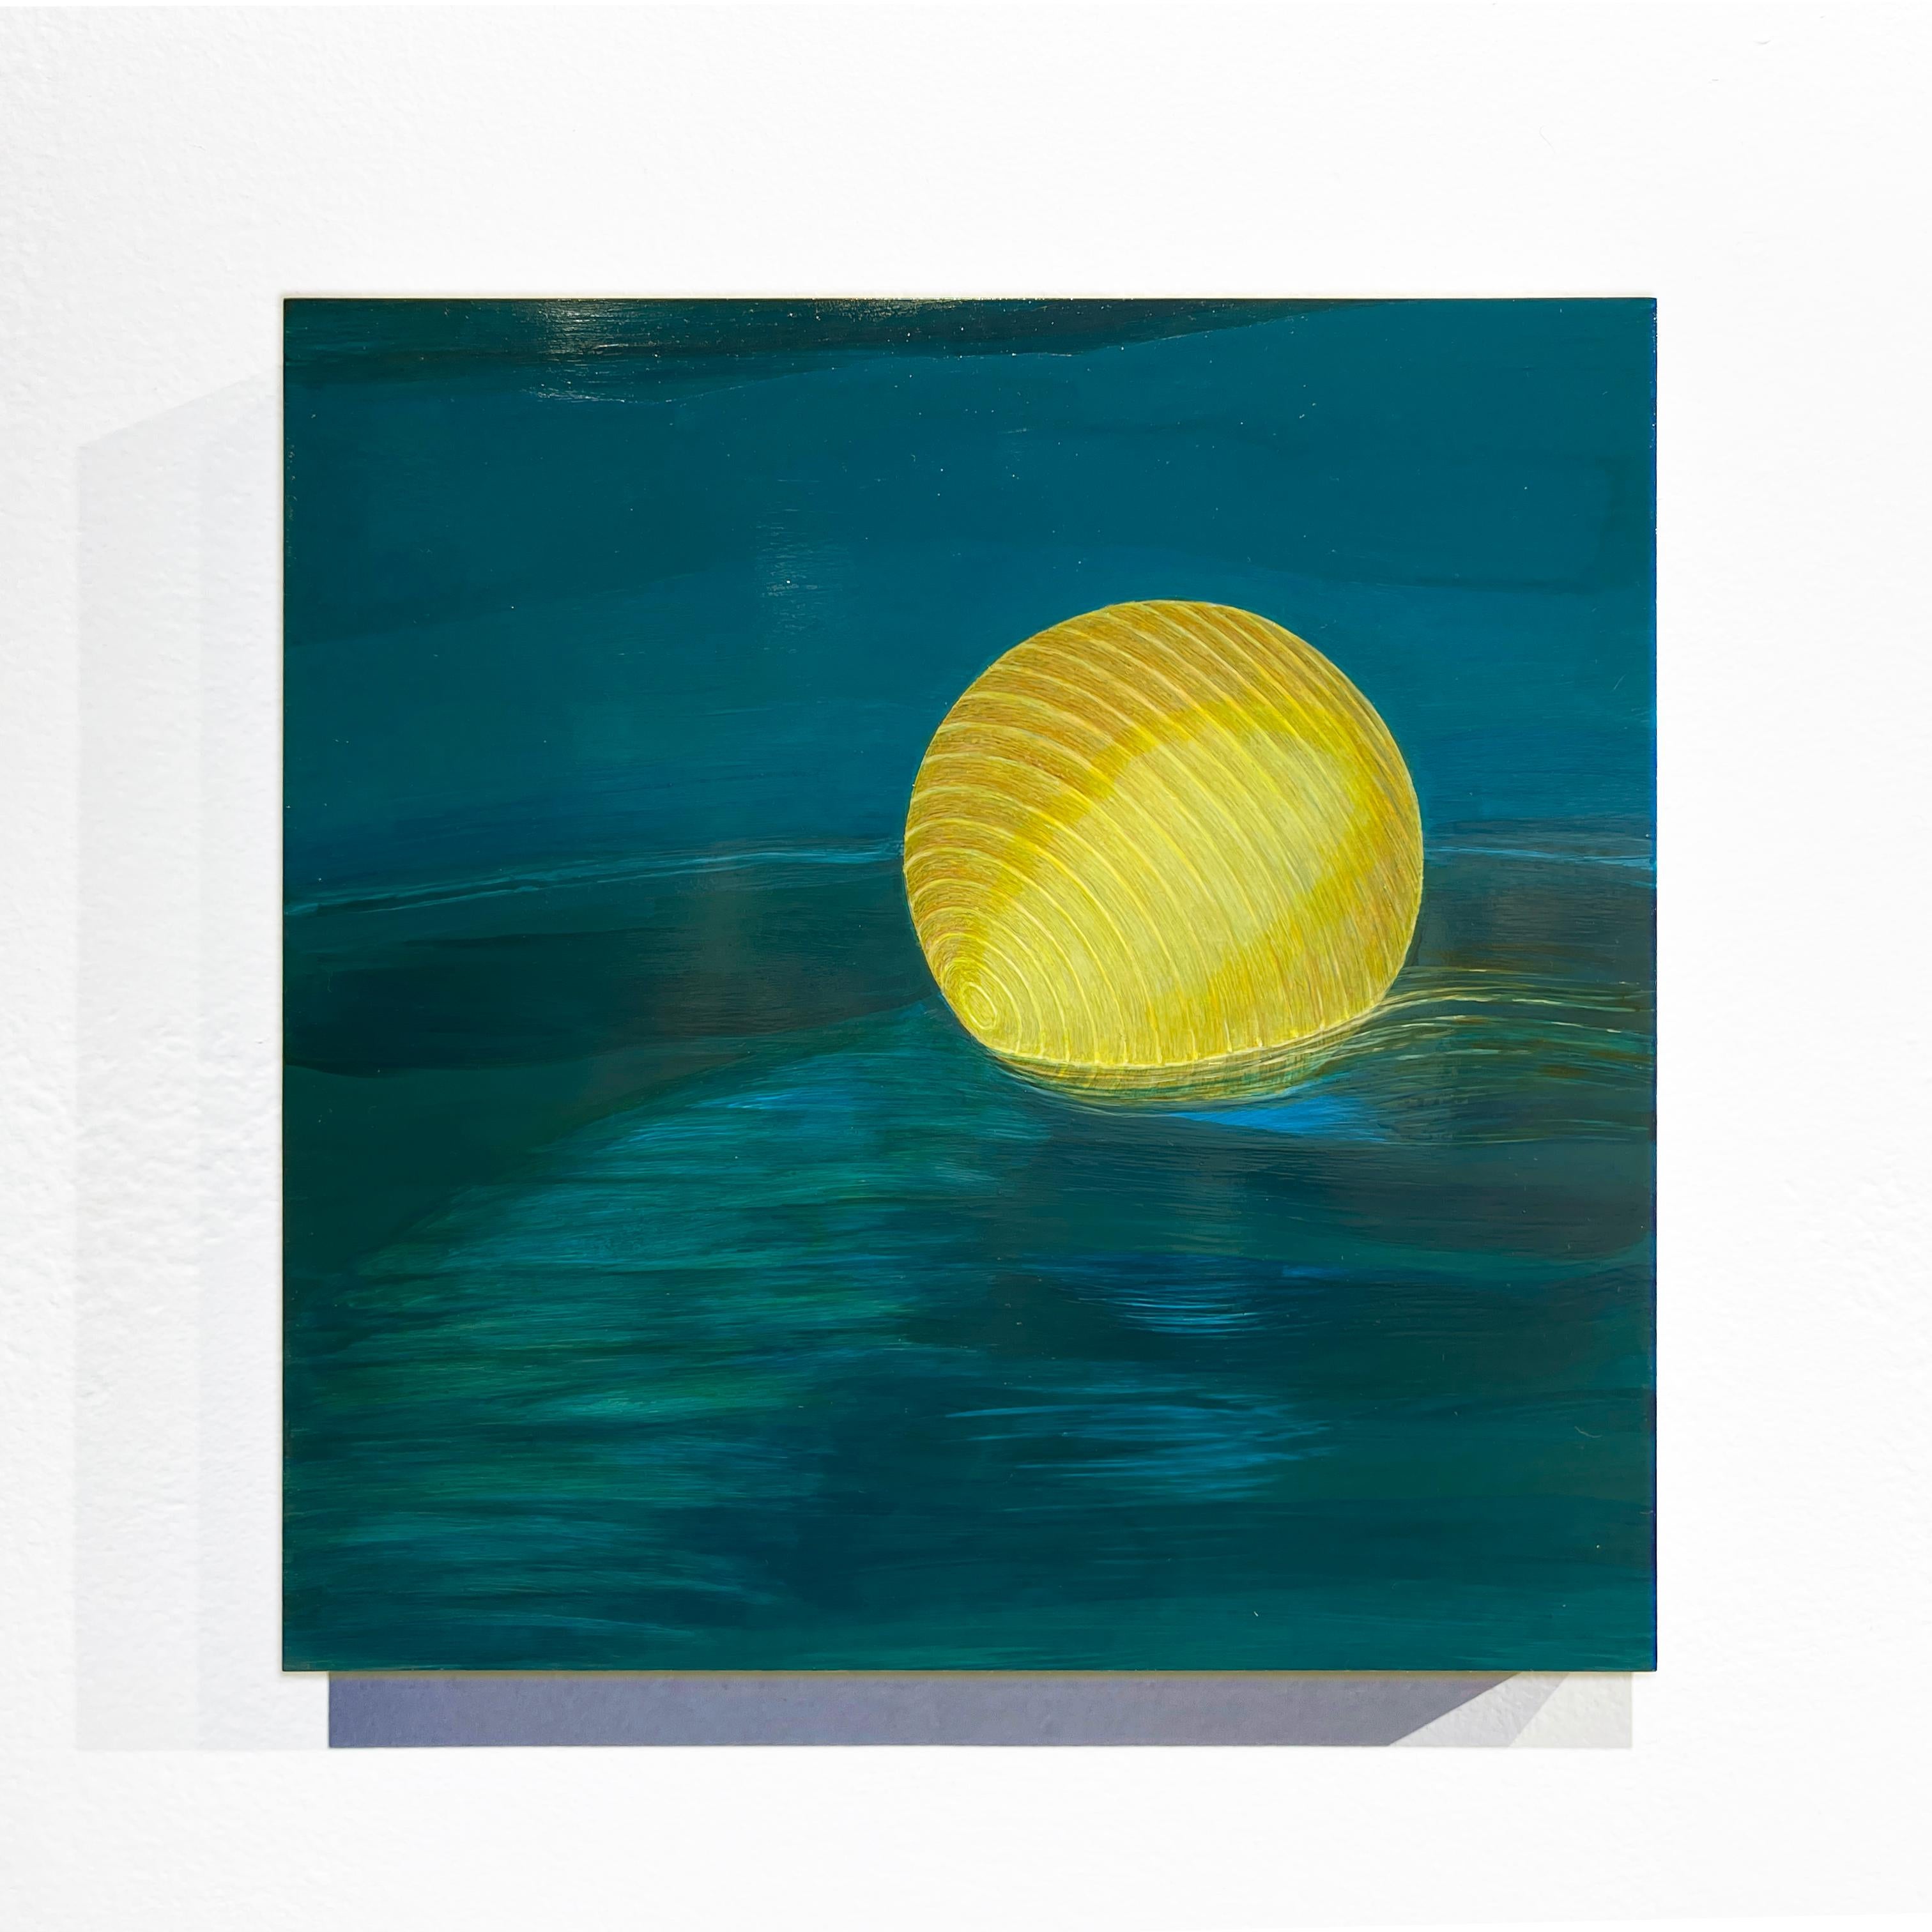 Ocean Rest - Beleuchtete Papierlaterne auf Vivid Blue Water, Acryl auf Platte – Painting von Christina Haglid